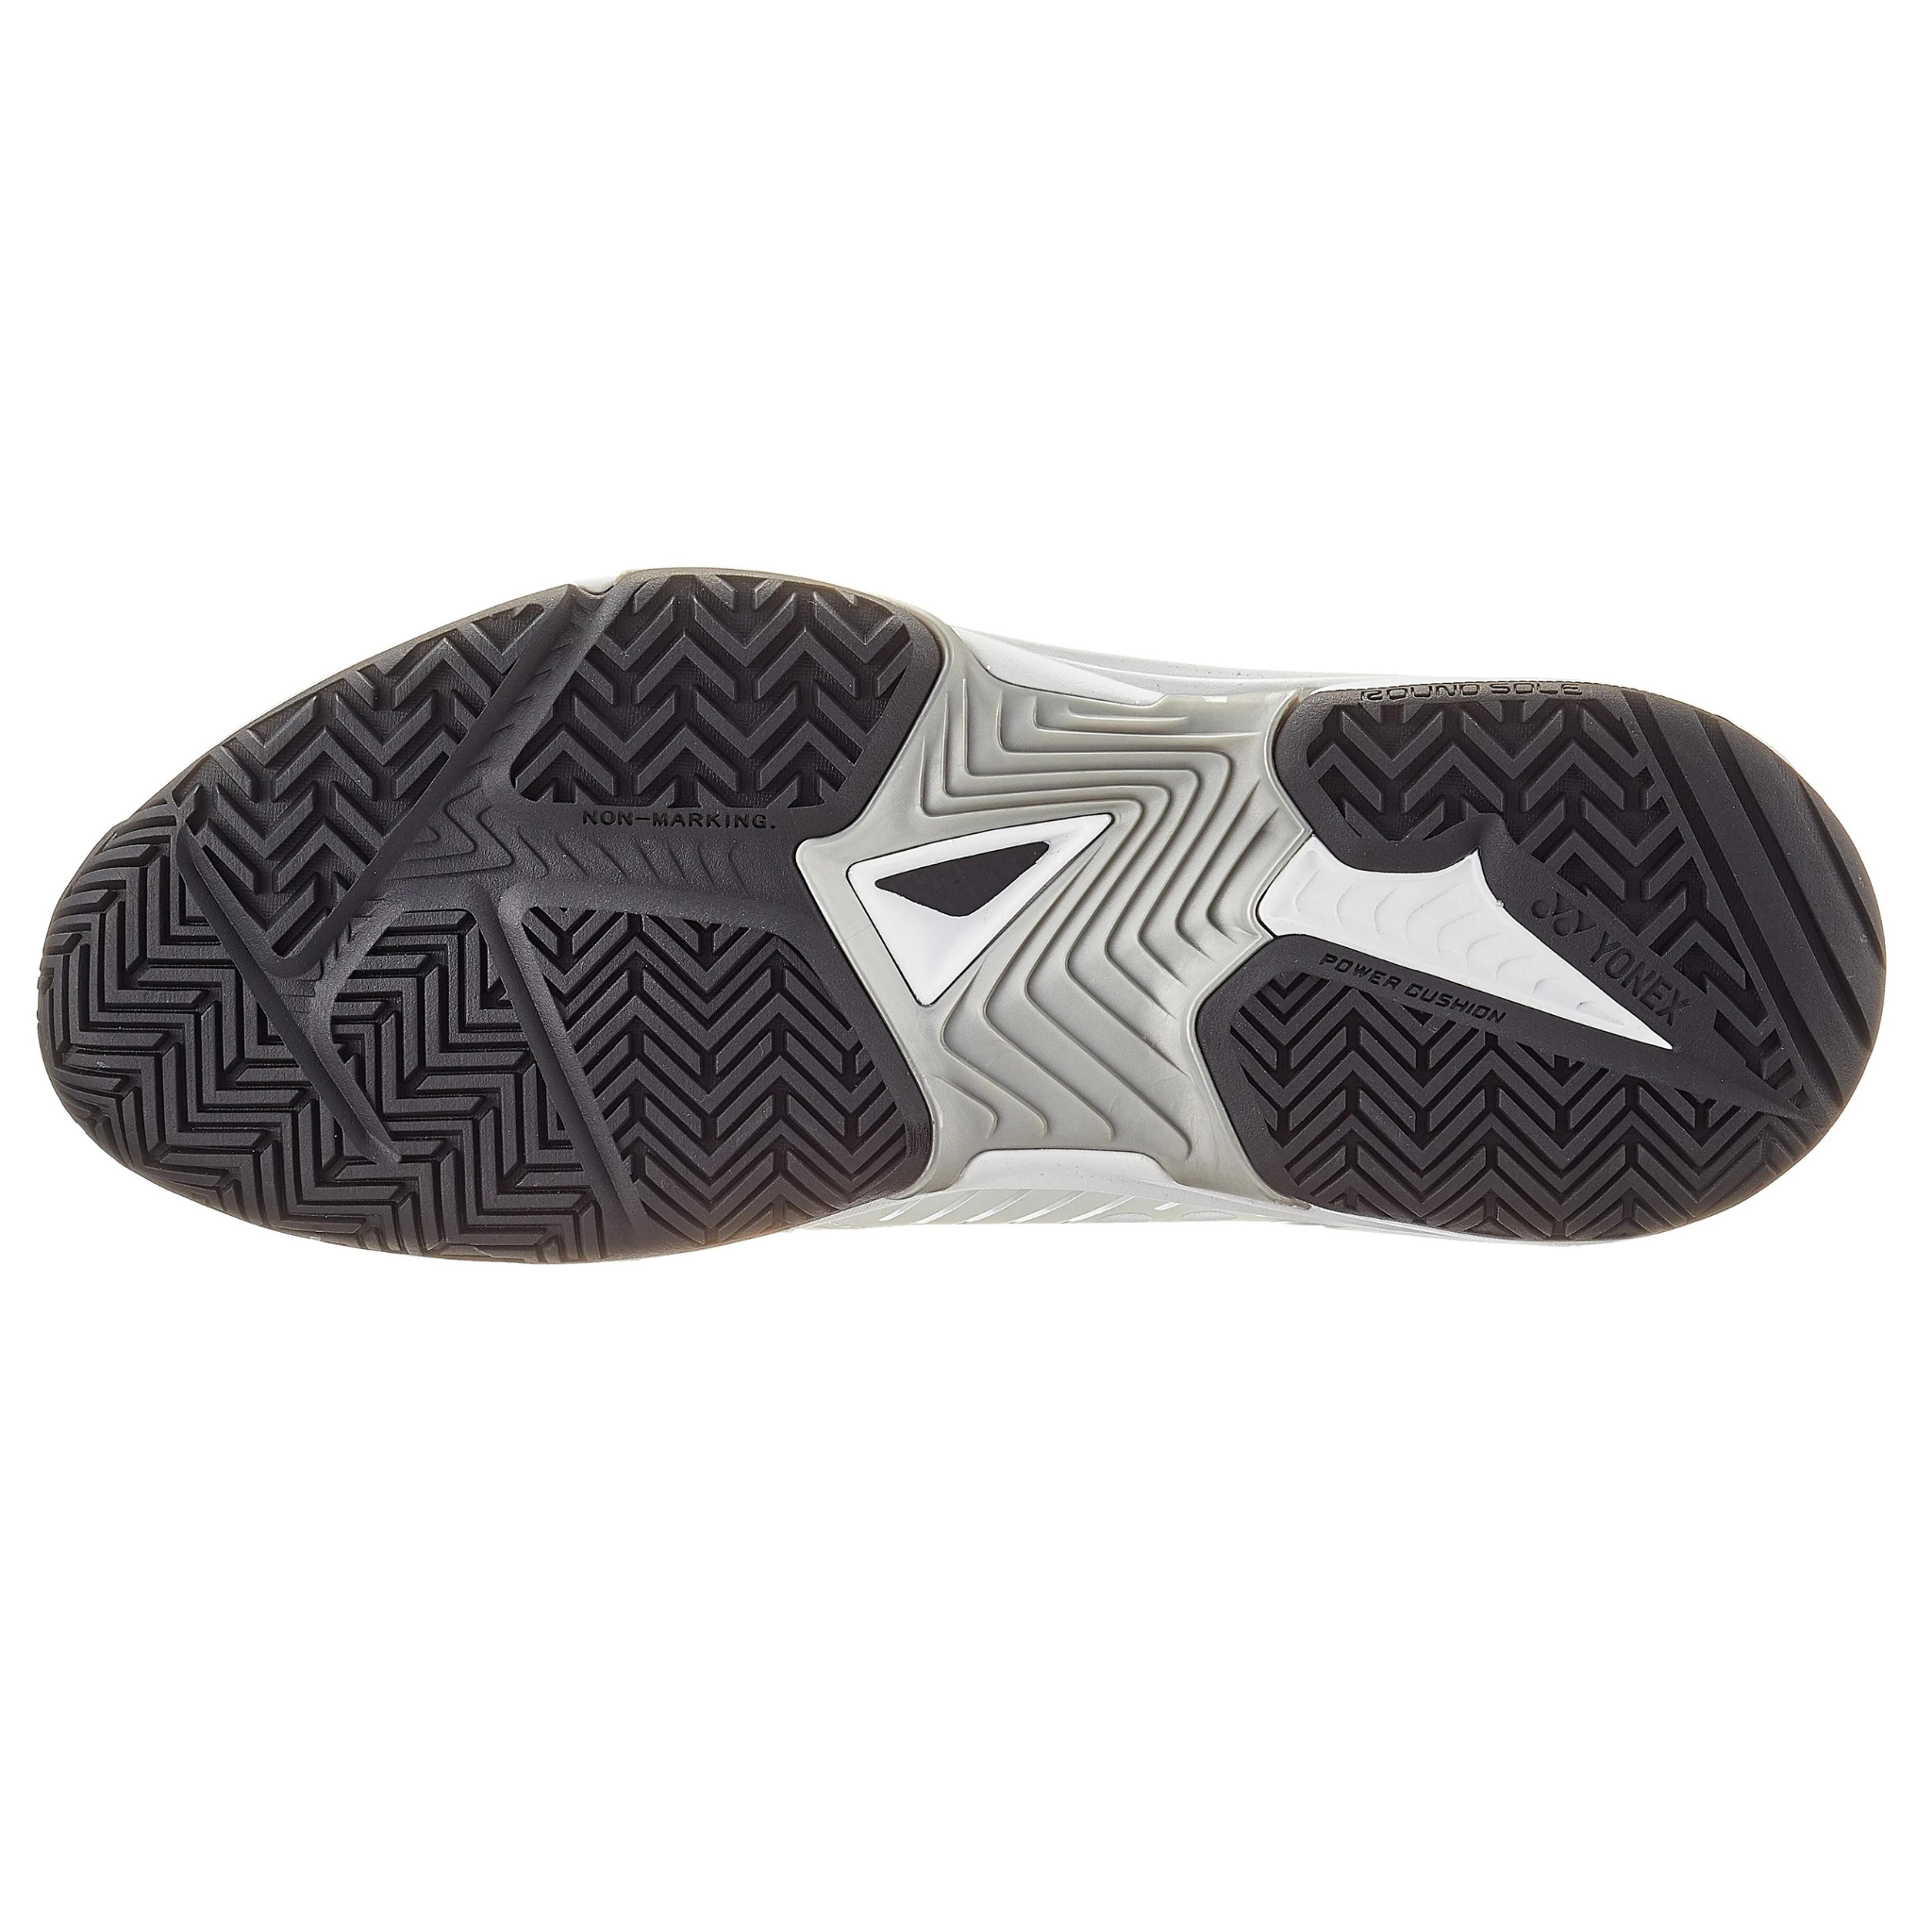 Yonex Sonicage 3 Wide Unisex Tennis Shoes - White/Black